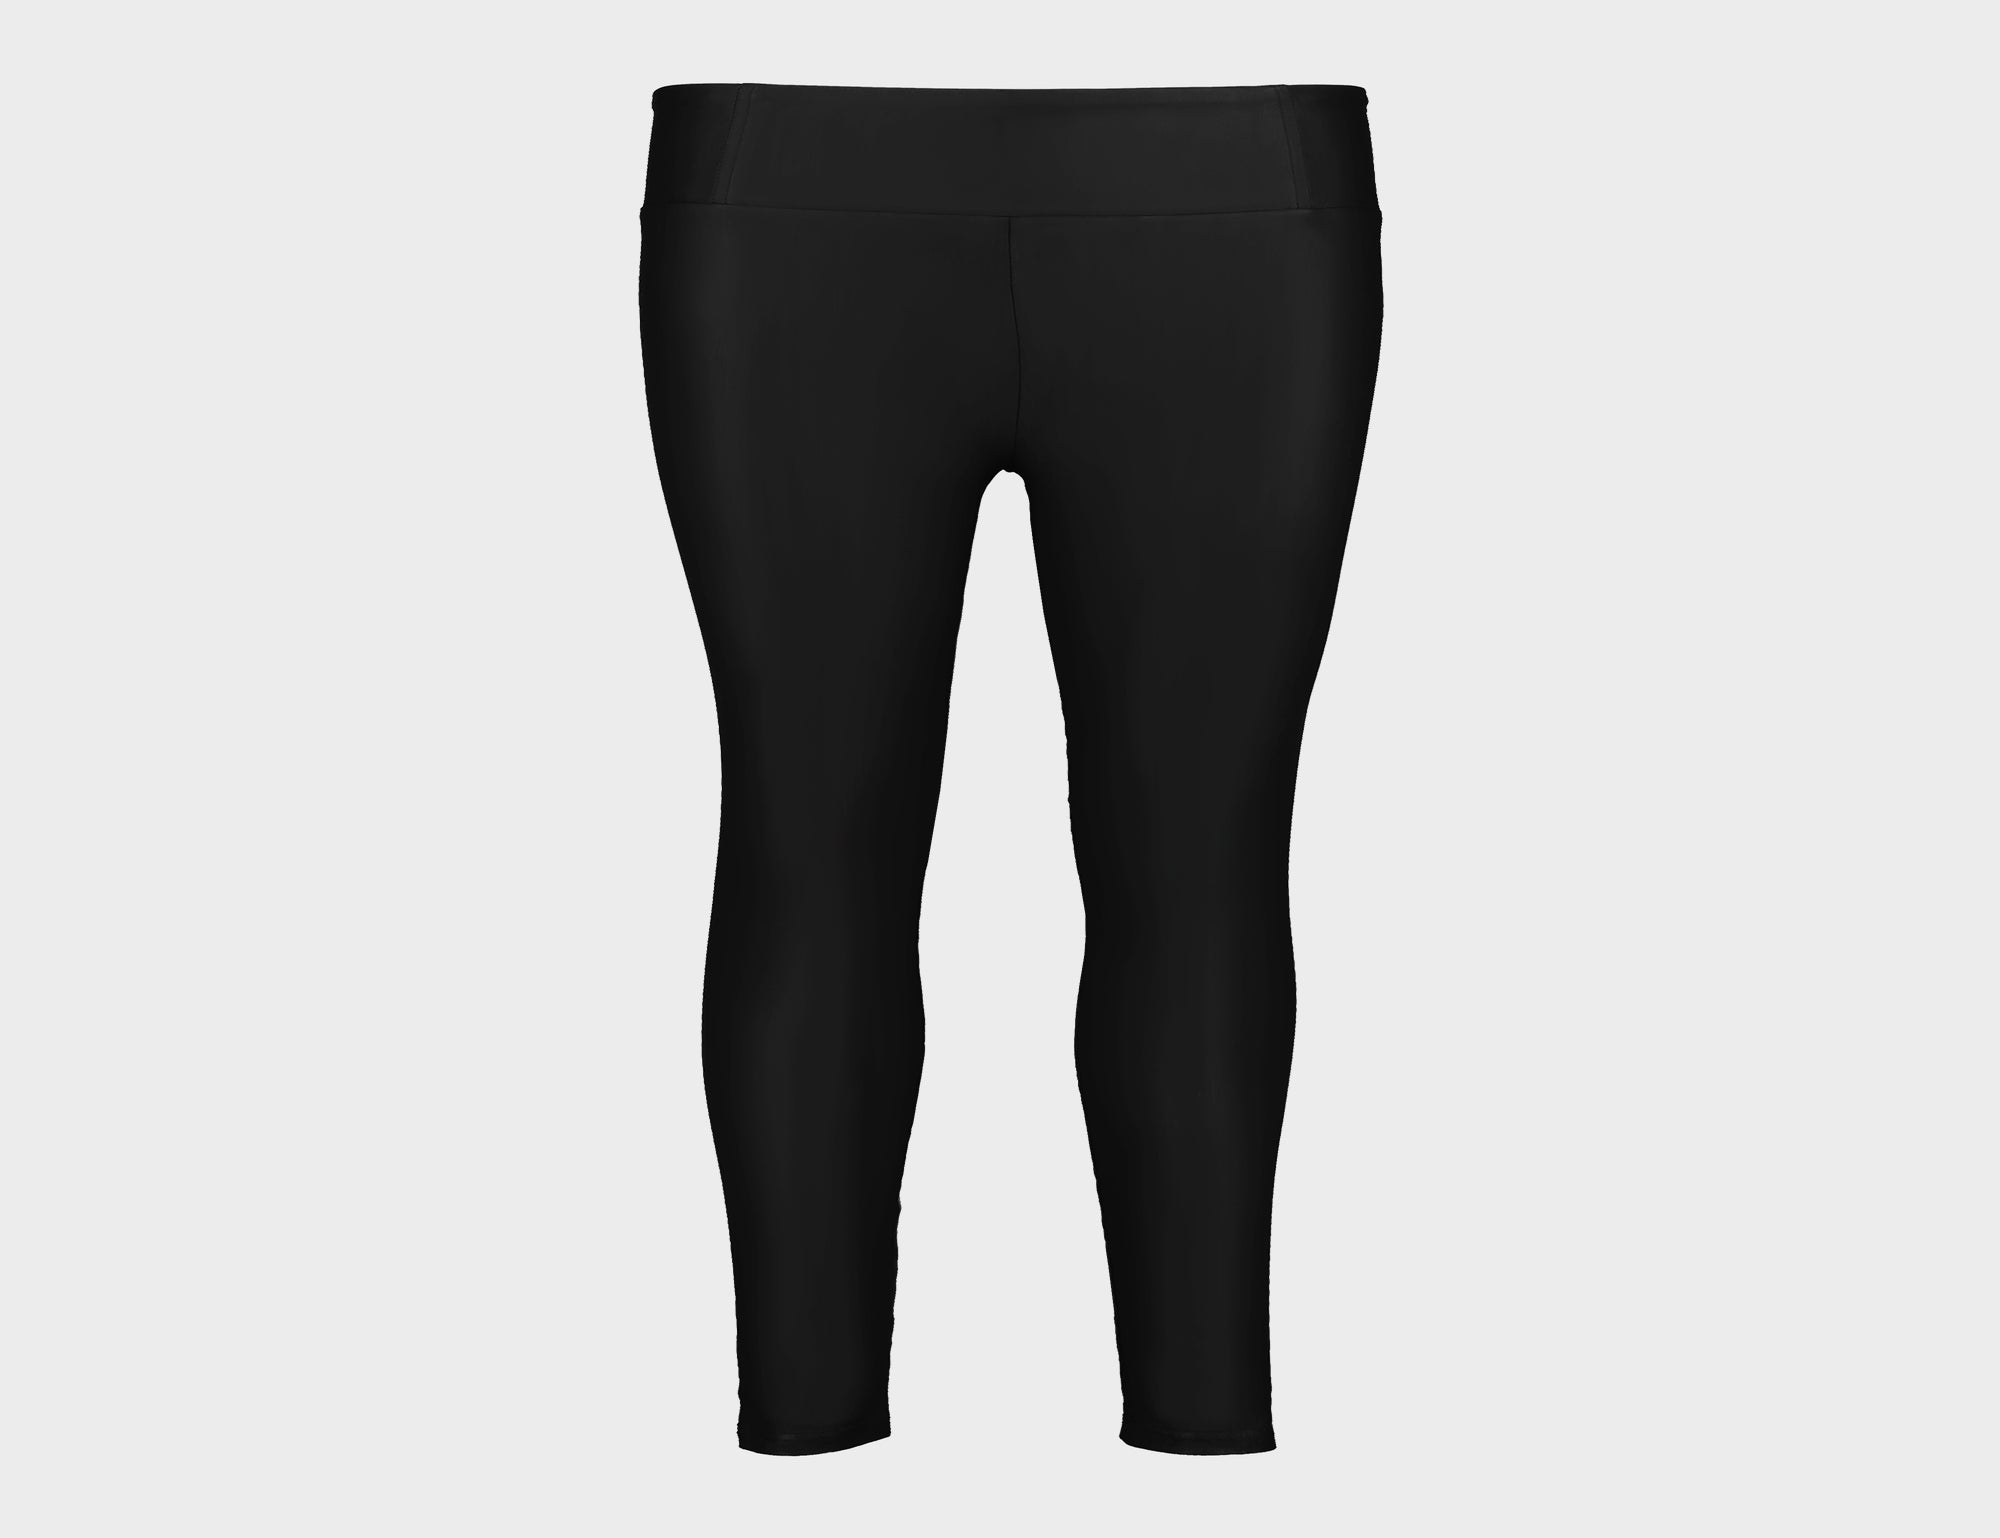 Pull On Satin Legging - Black - Pants - Full Length - Women's Clothing -  Storm